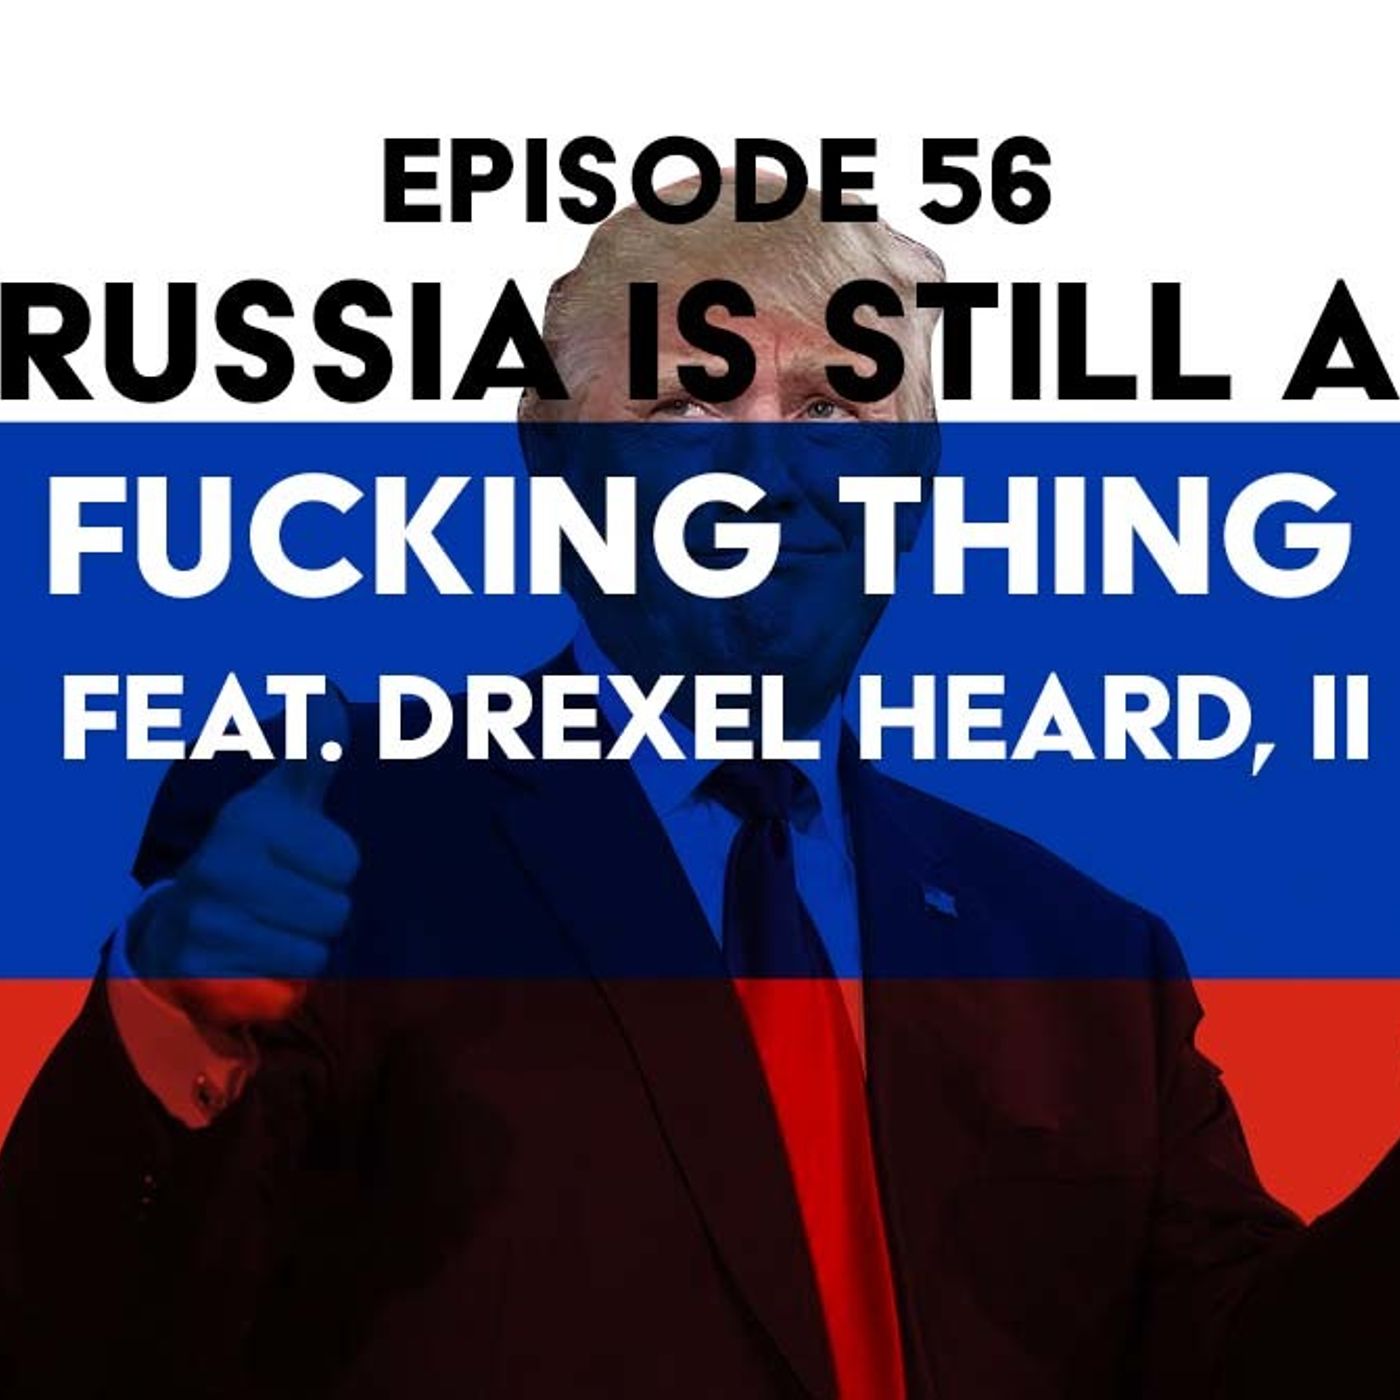 S1 Ep56: Russia is Still a Fucking Thing f/ Drexel Heard, II